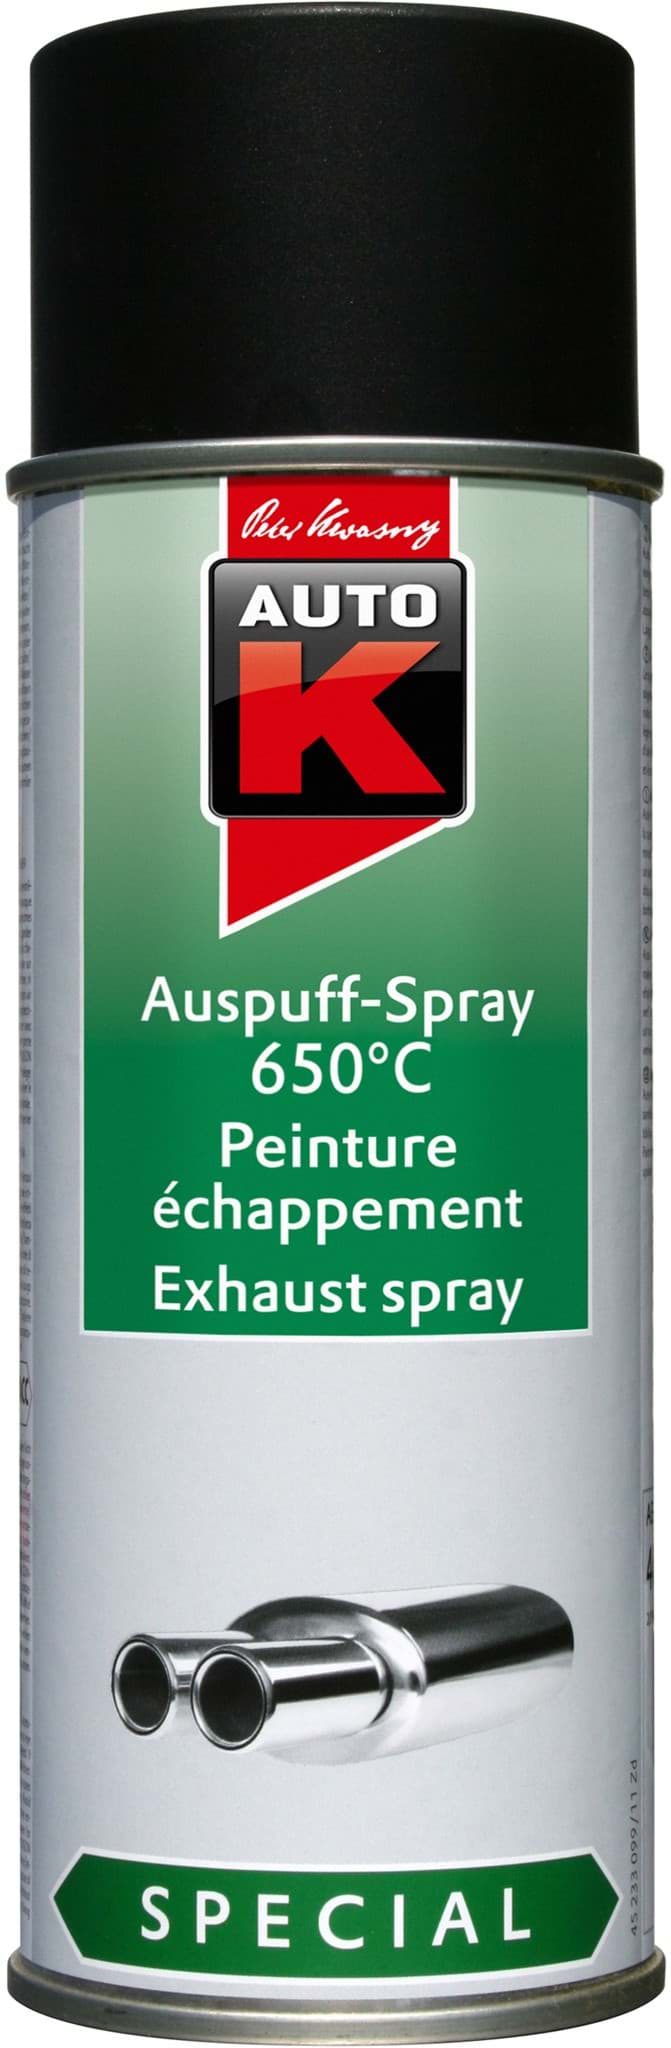 Auto-K Auspuff-Spray hitzefest 650°C schwarz 400ml 233099